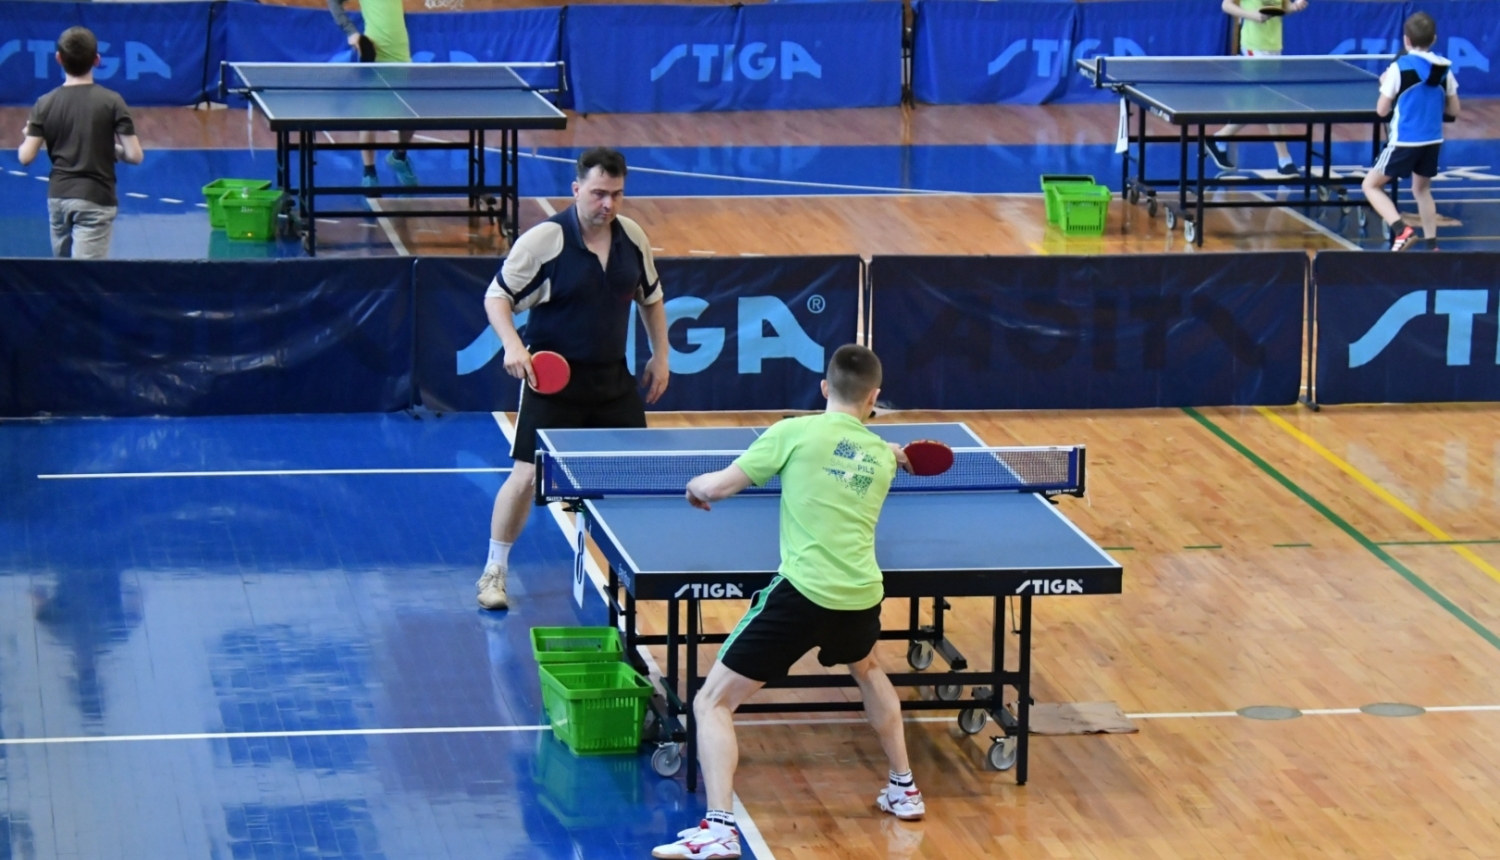 Divi vīrieši sporta zālē spēlē galda tenisu, fonā citi spēlētāji un galdi